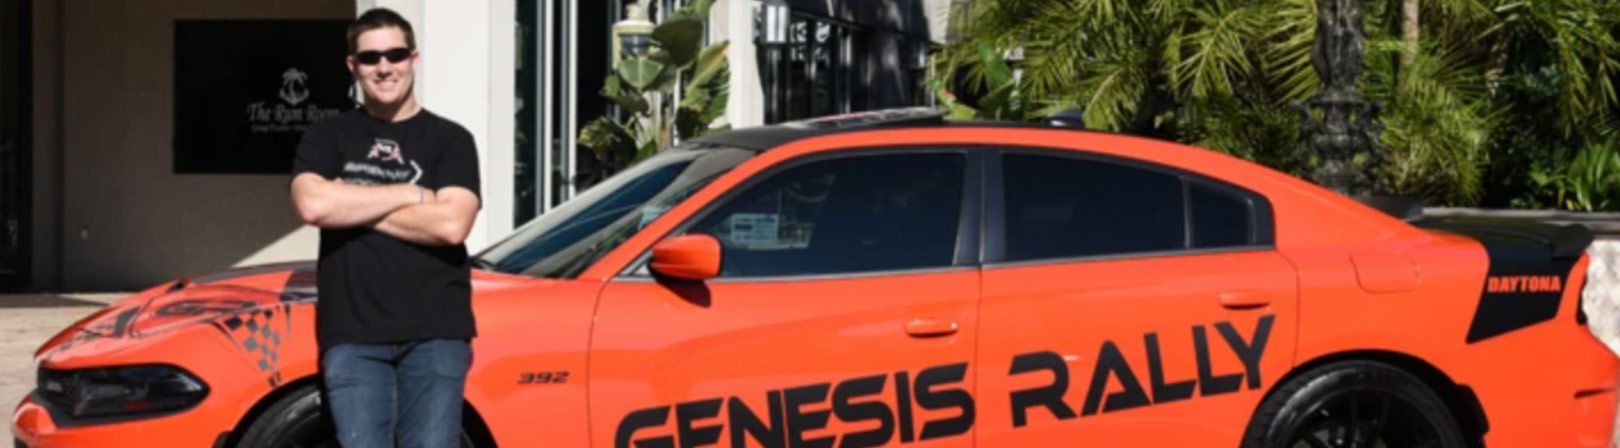 Genesis Rally Keys To Paradise